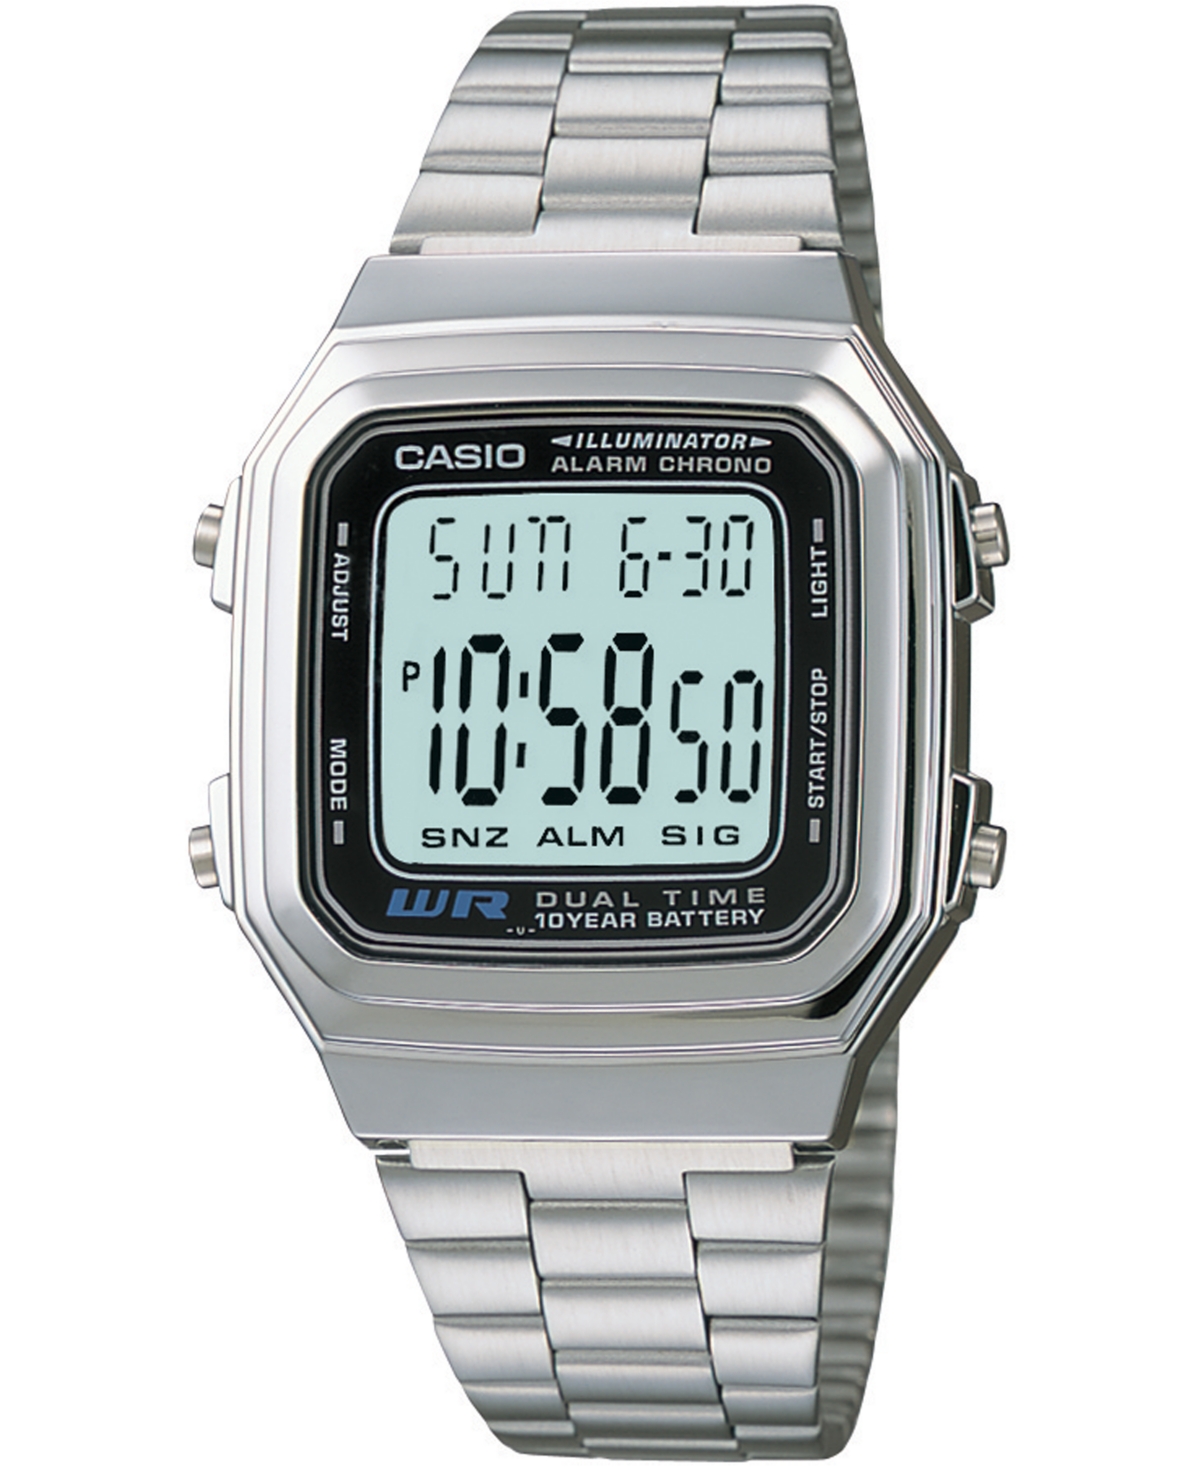 Unisex Digital Stainless Steel Bracelet Watch 32mm - Silver